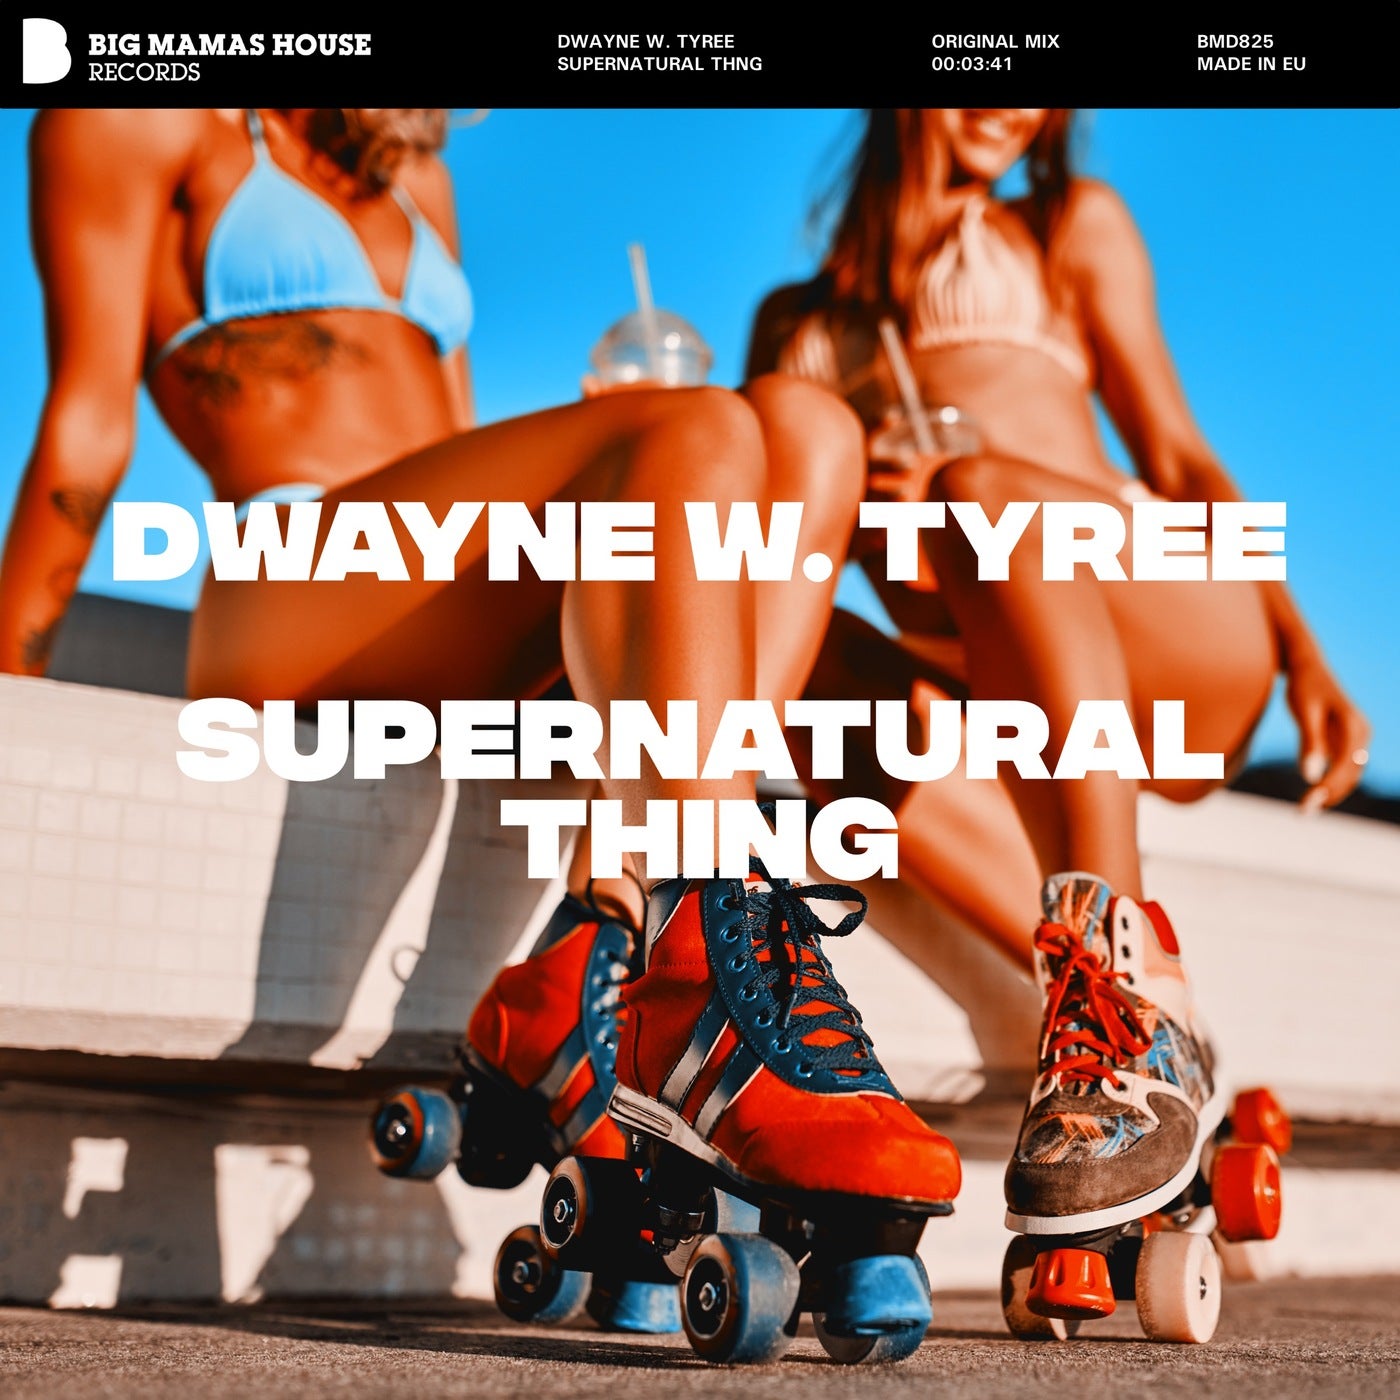 Dwayne W. Tyree - Supernatural Thing [BMD825]